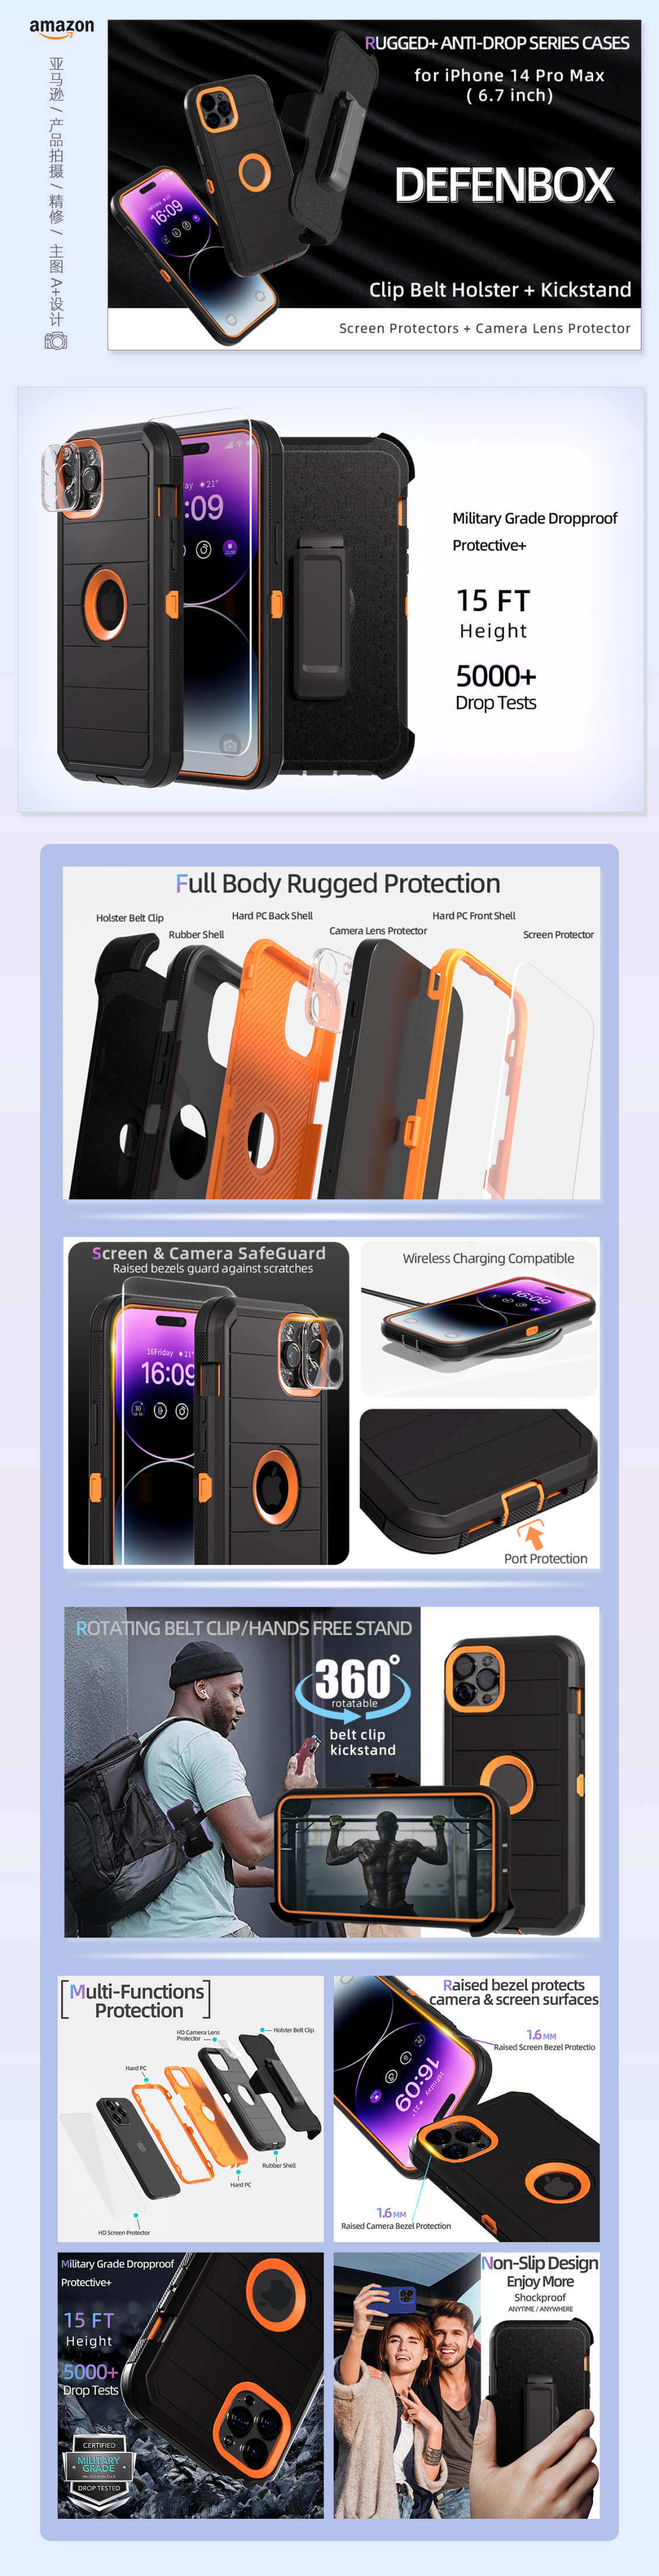 淘宝美工彩吉星辰手机壳硅胶超薄防震保护套装适用于 iPhone 14 Pro Max作品